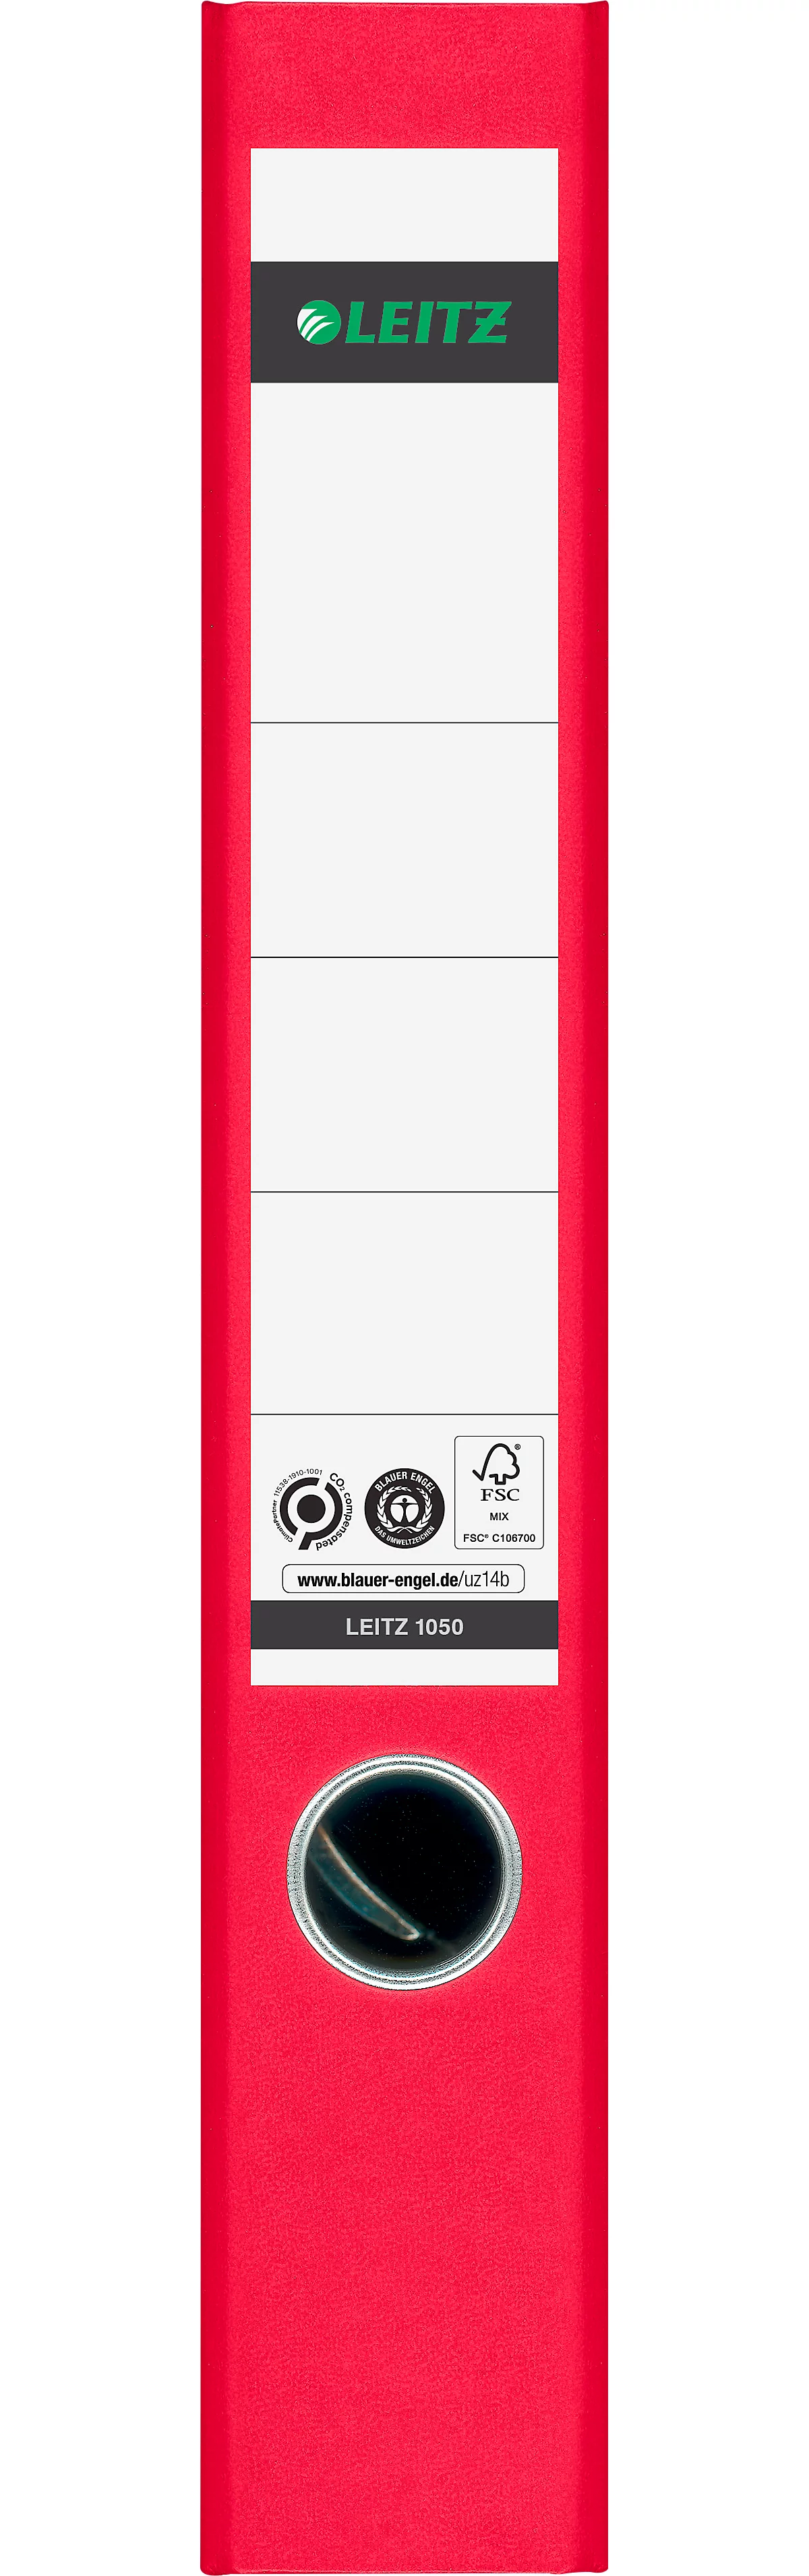 Ordner LEITZ®1050, DIN A4, Rückenbreite 52 mm, Griffloch, geklebtes Rückenschild, klimaneutral, Hartpappe, 20 Stück, rot